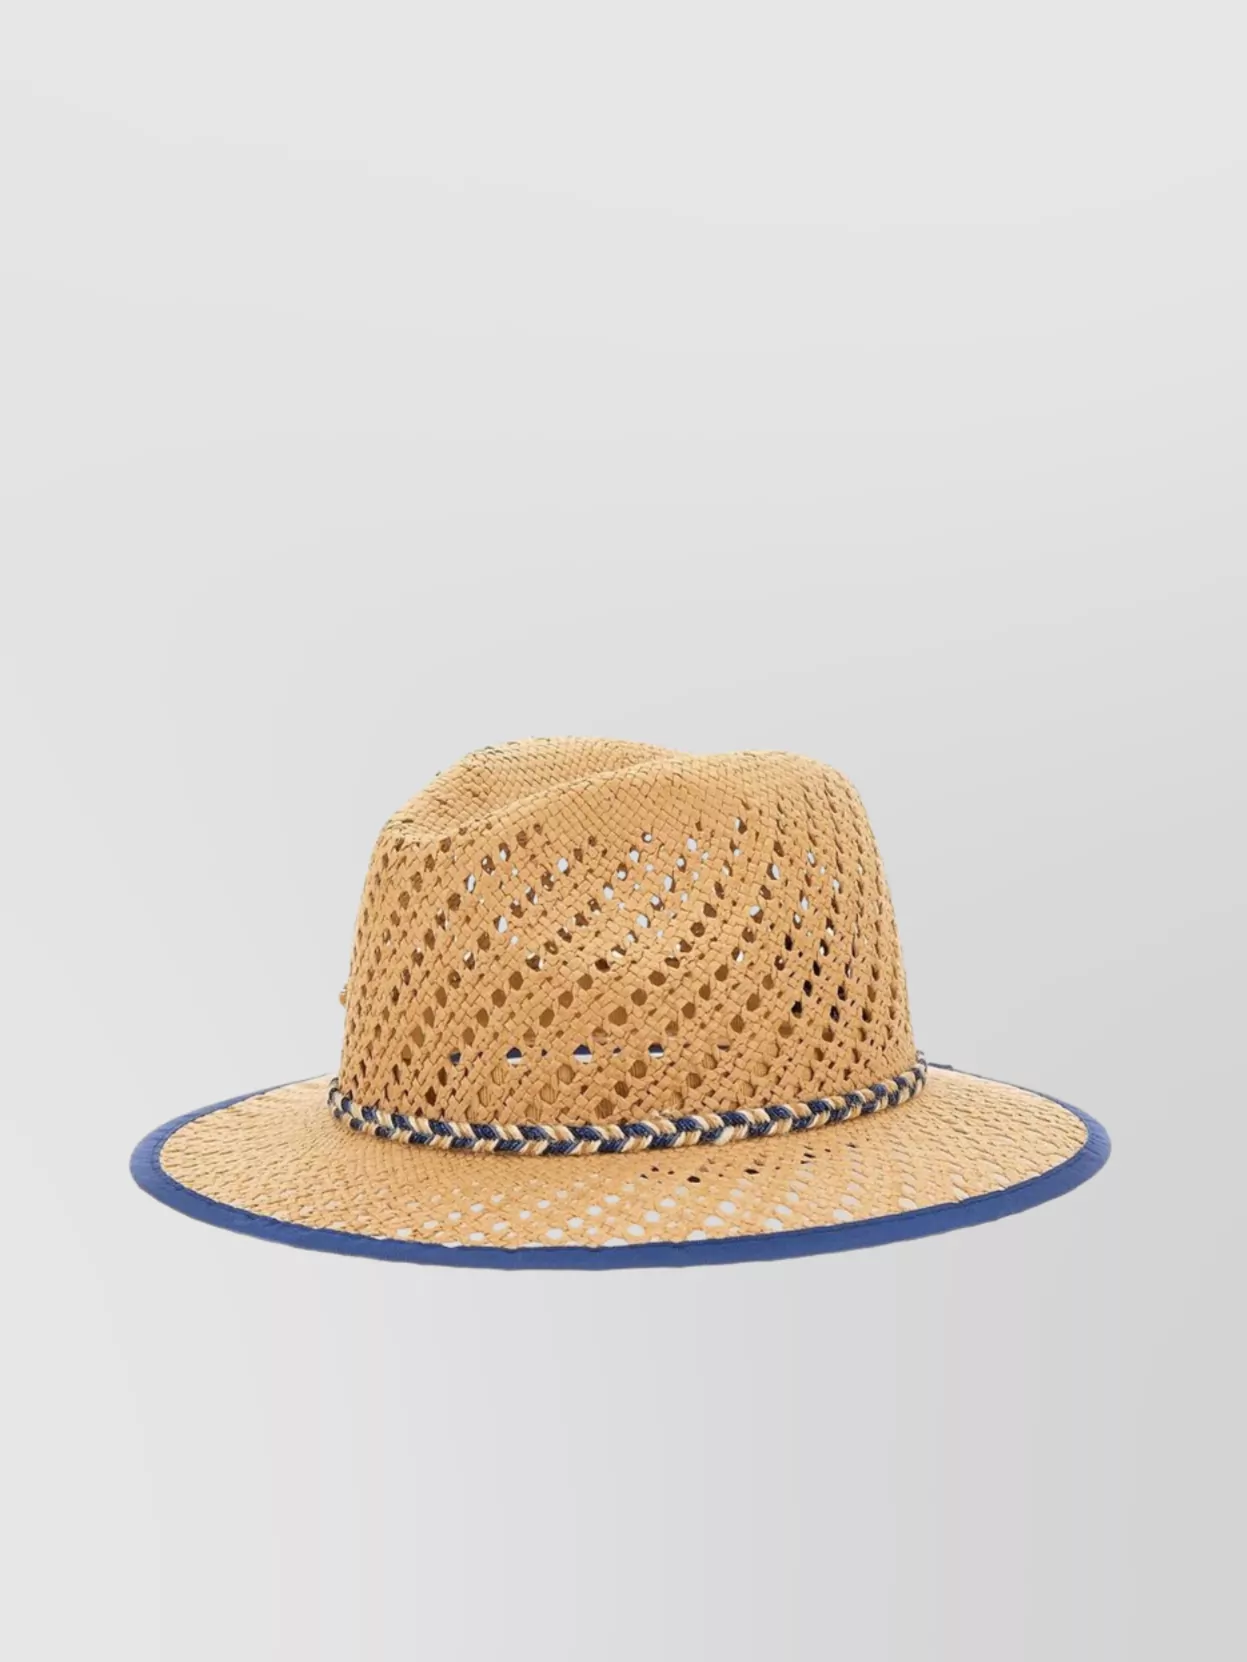 Borsalino Braided Trim Straw Paper Hat In Blu/beige